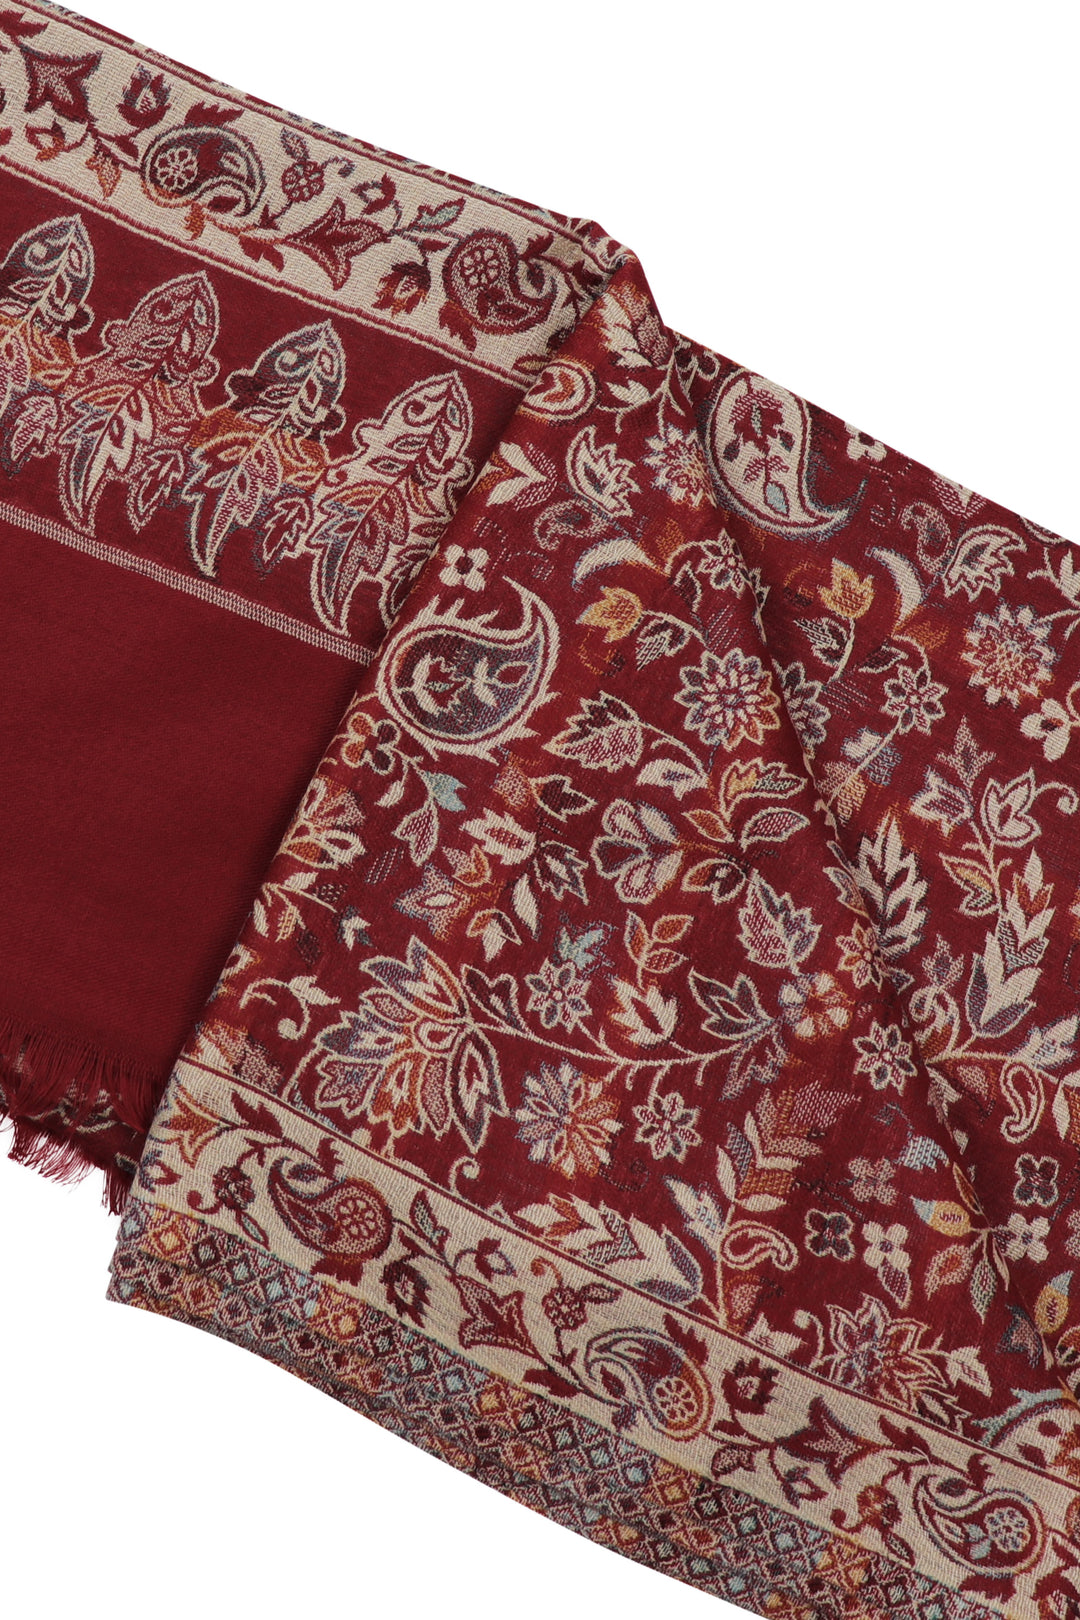 Sindoor Kashmir wool shawl